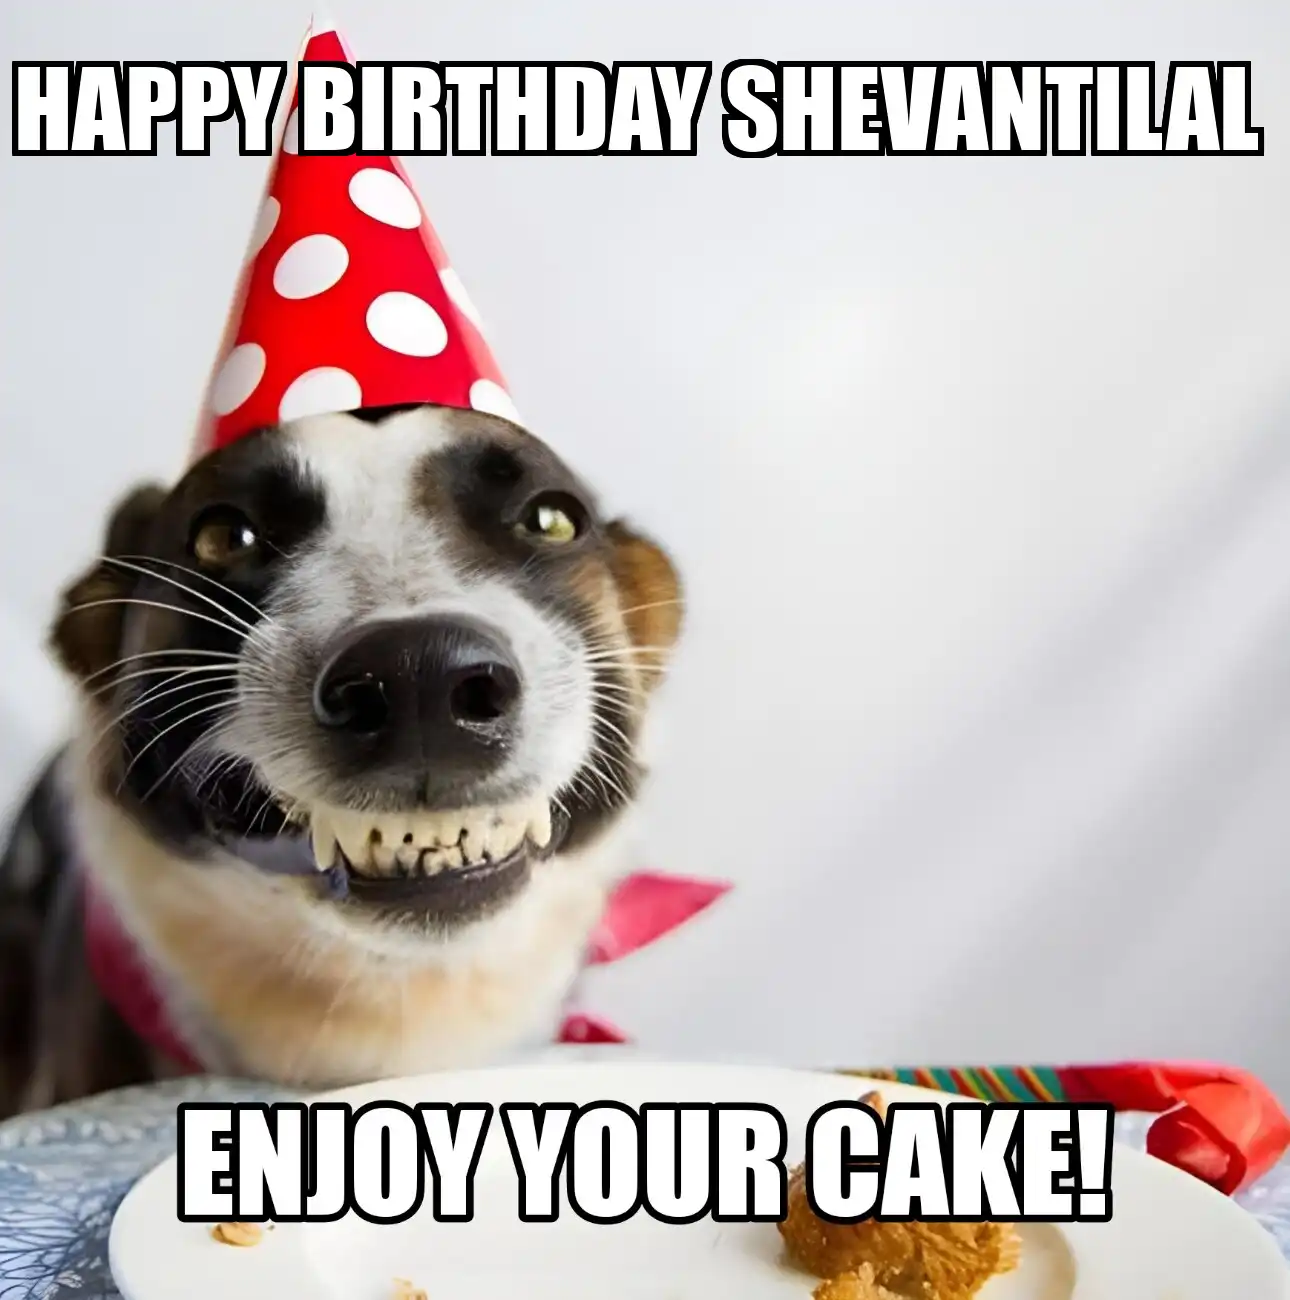 Happy Birthday Shevantilal Enjoy Your Cake Dog Meme